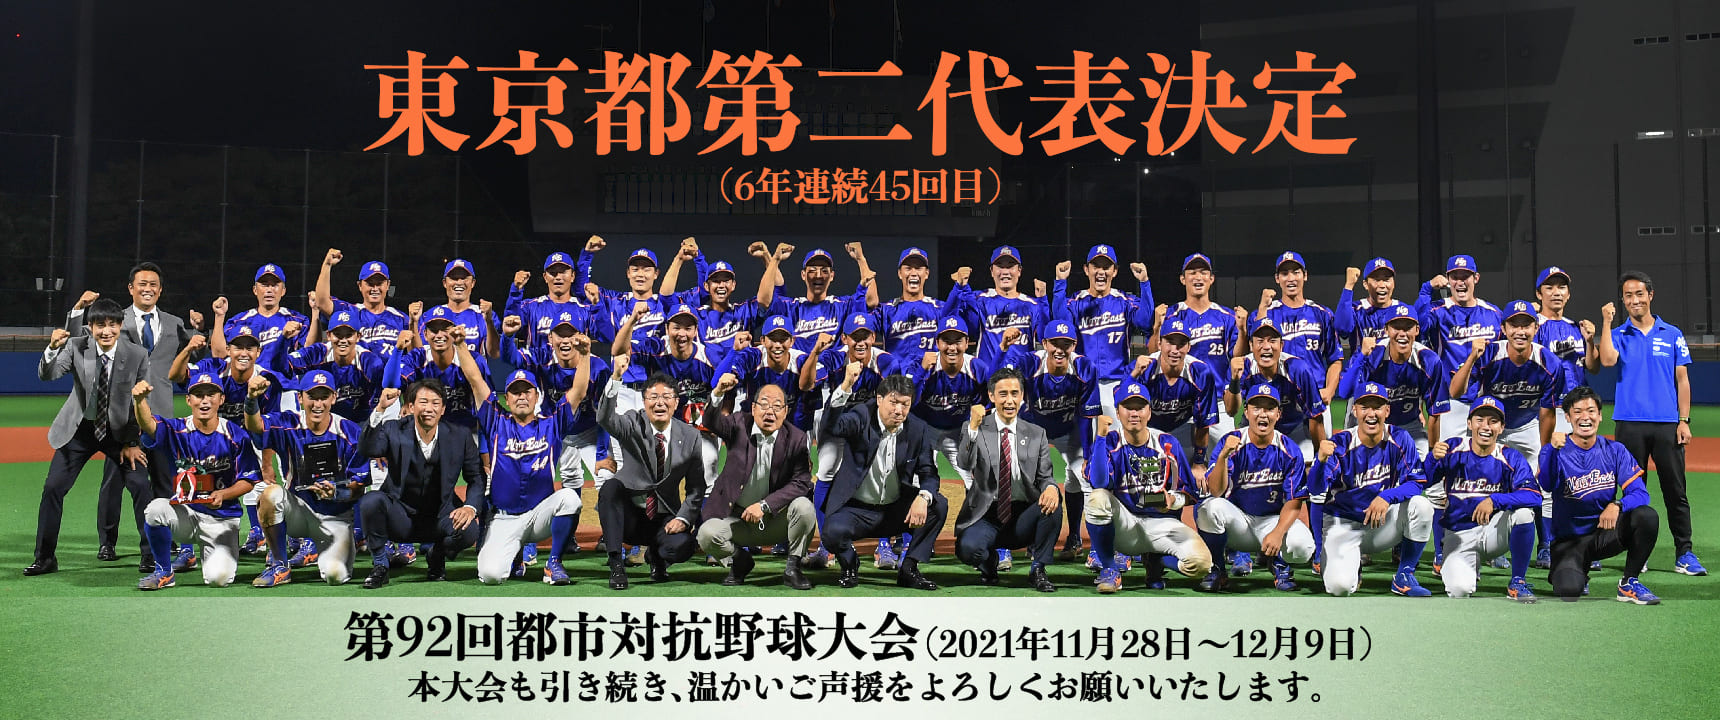 第92回 都市対抗野球大会 東京都代表決定戦